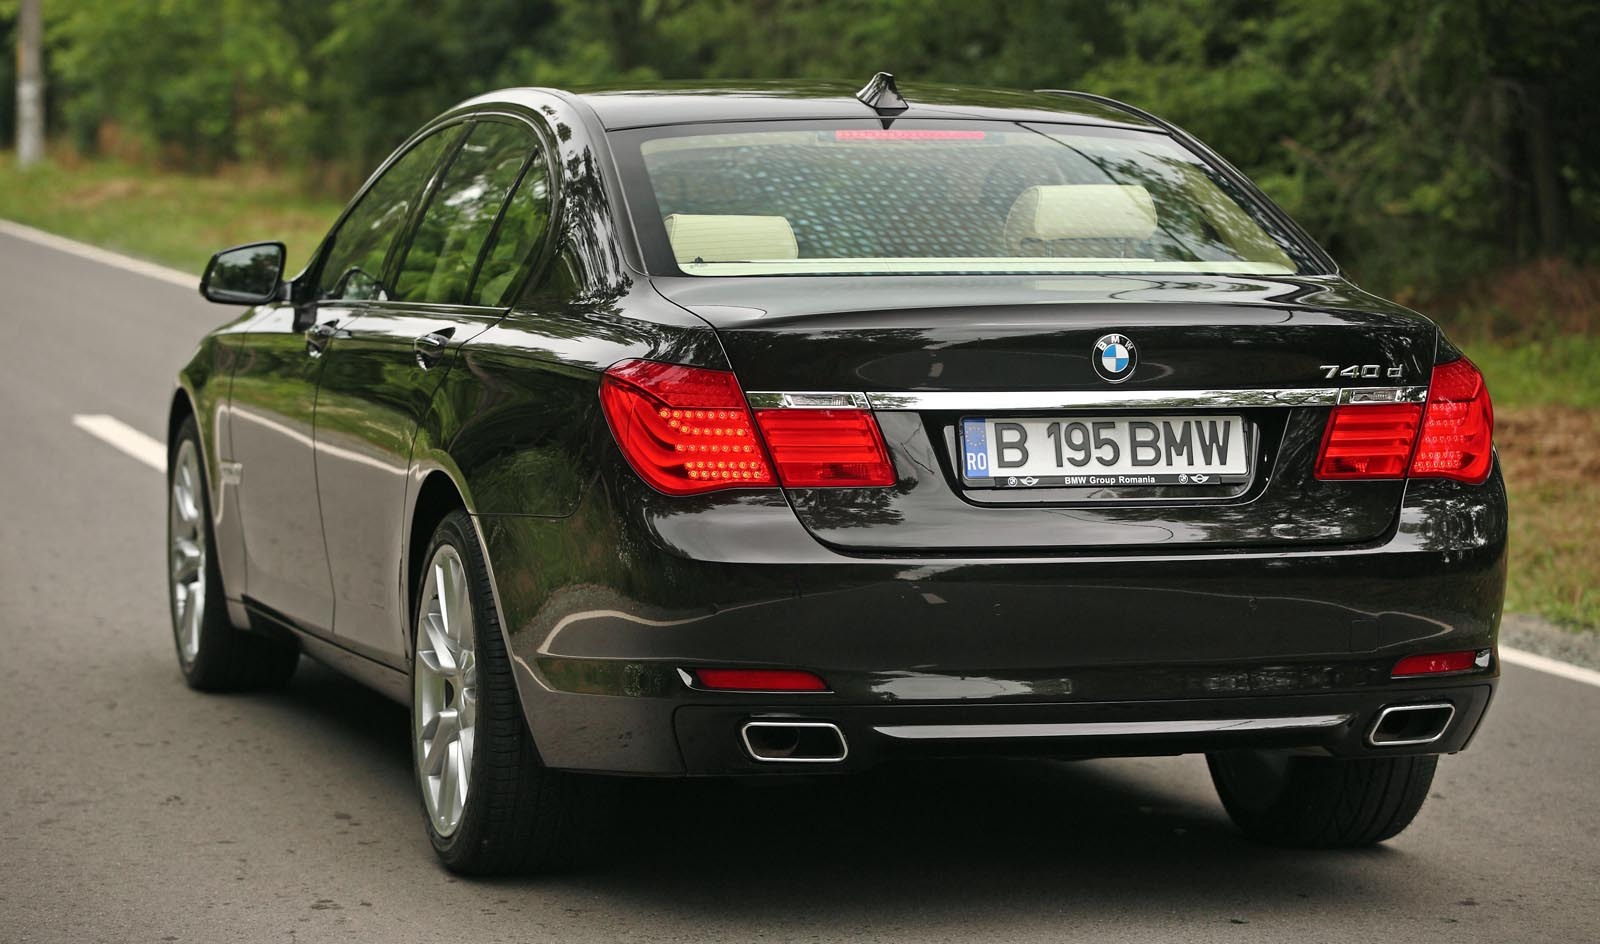 Masivitatea lui BMW Seria 7 este ascunsa de designul fluid, dinamic si elegant